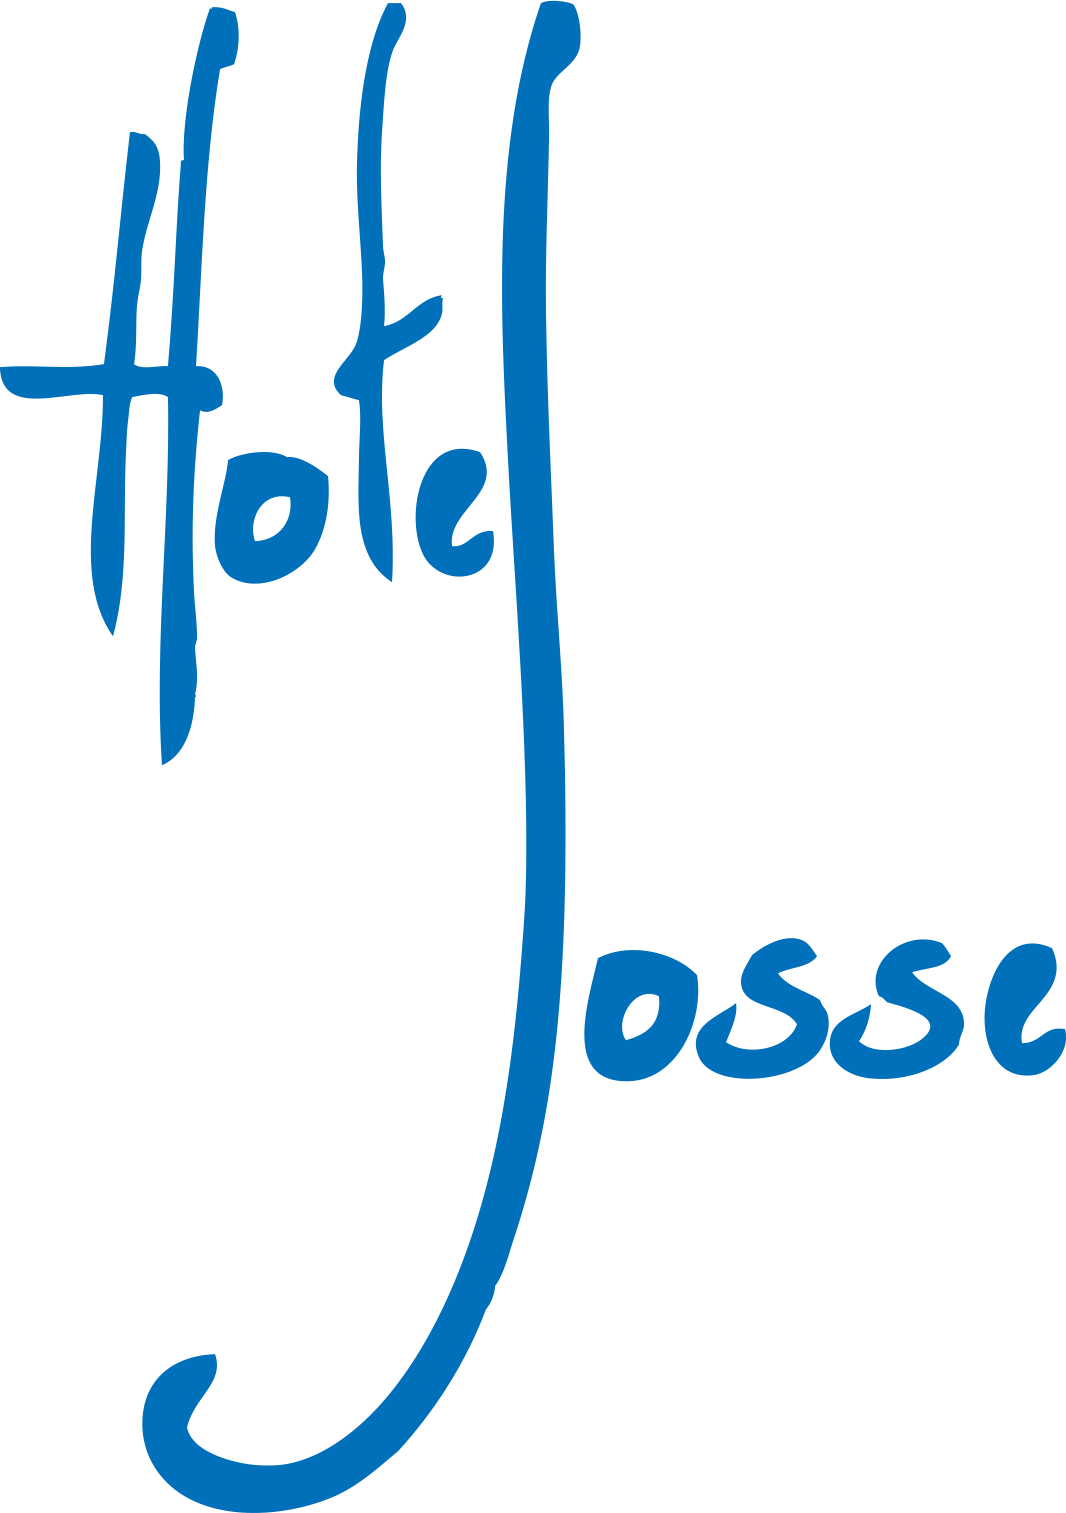 Hotel Josse